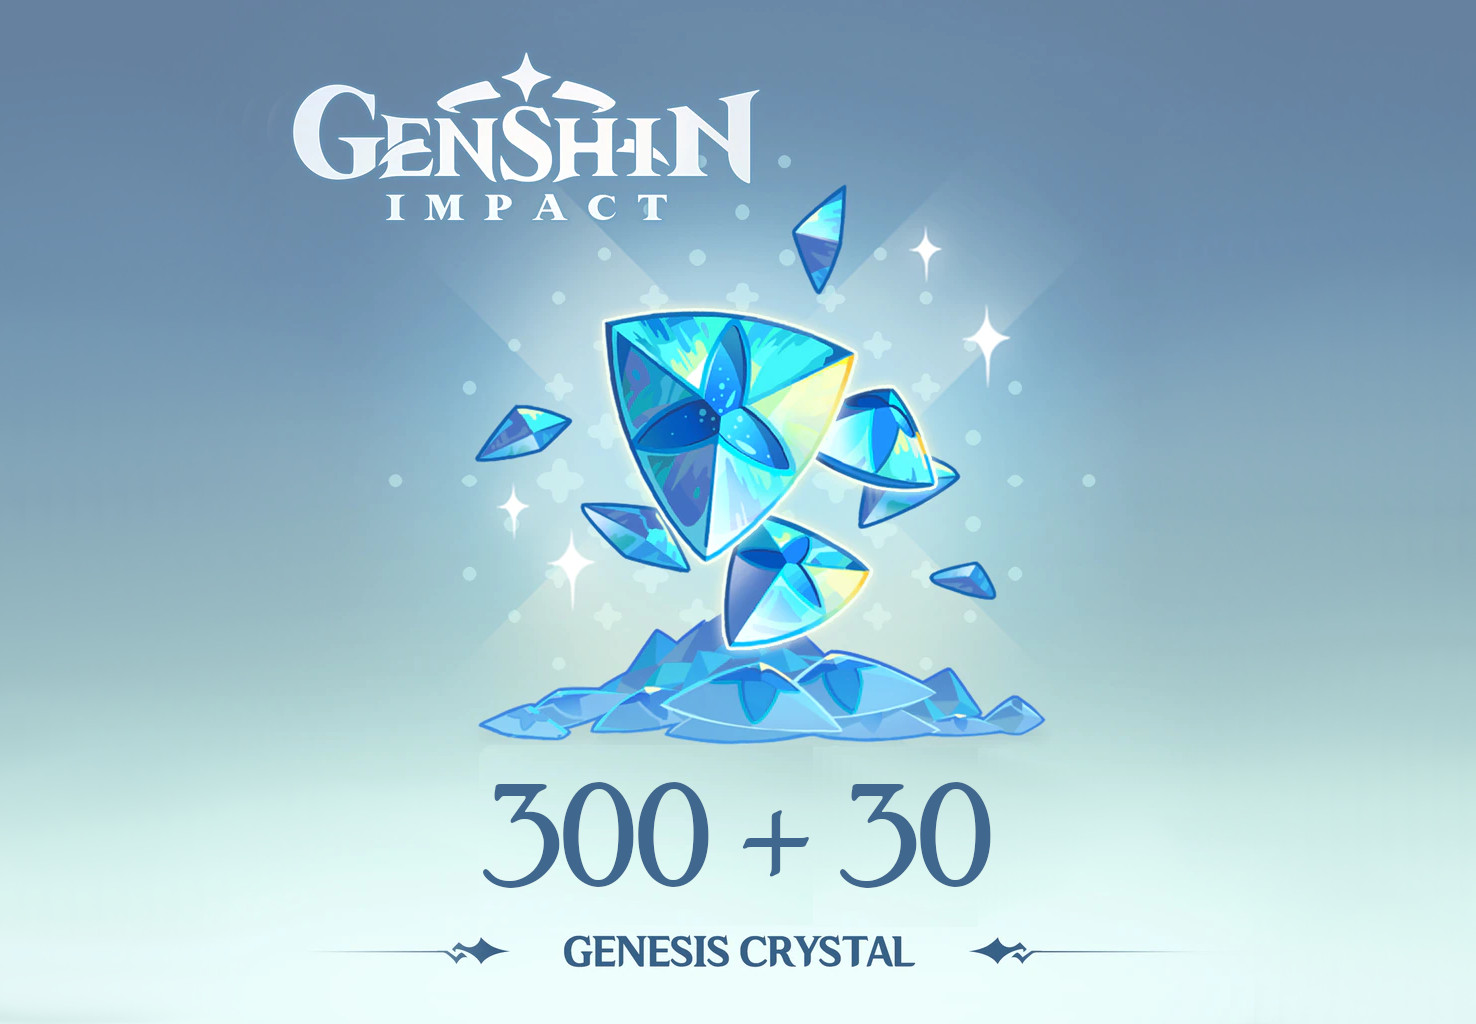 Genshin Impact - 300 + 30 Genesis Crystals Reidos Voucher [USD 5.37]